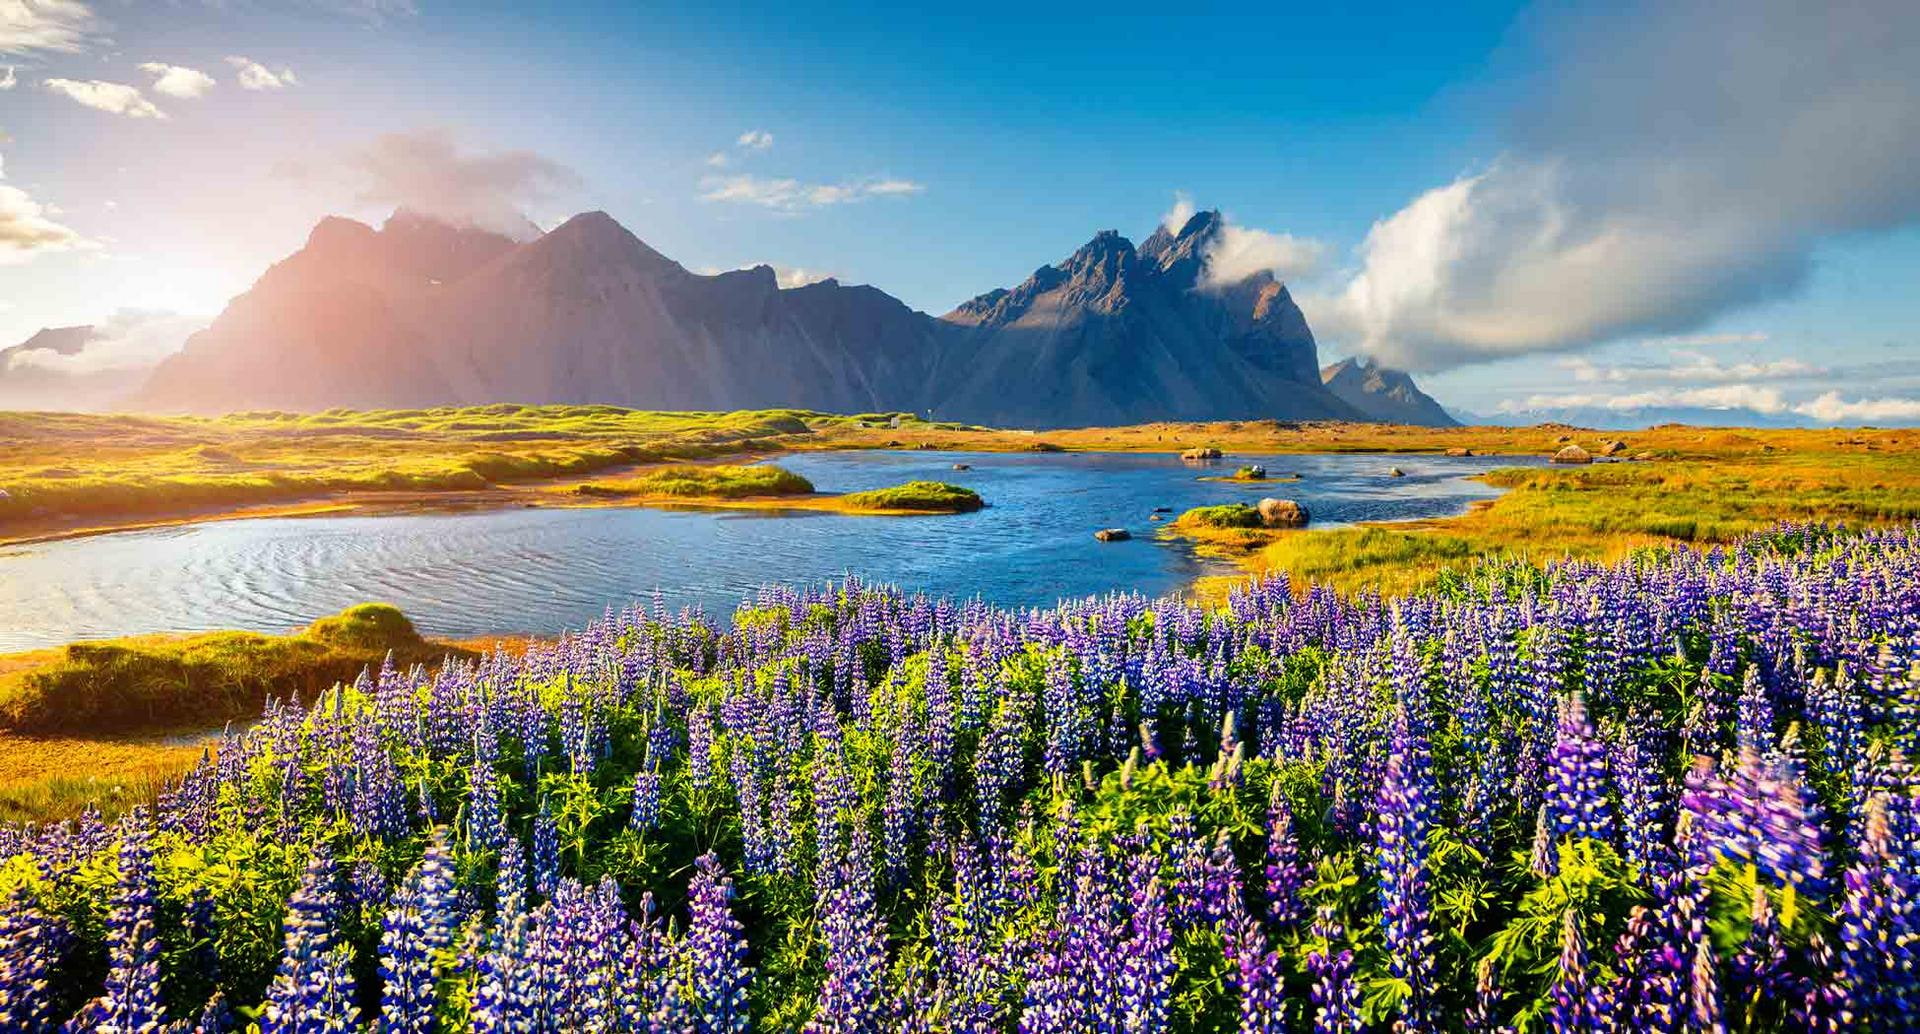 Islands Landschaft mit lila Blumen im Vordergrund